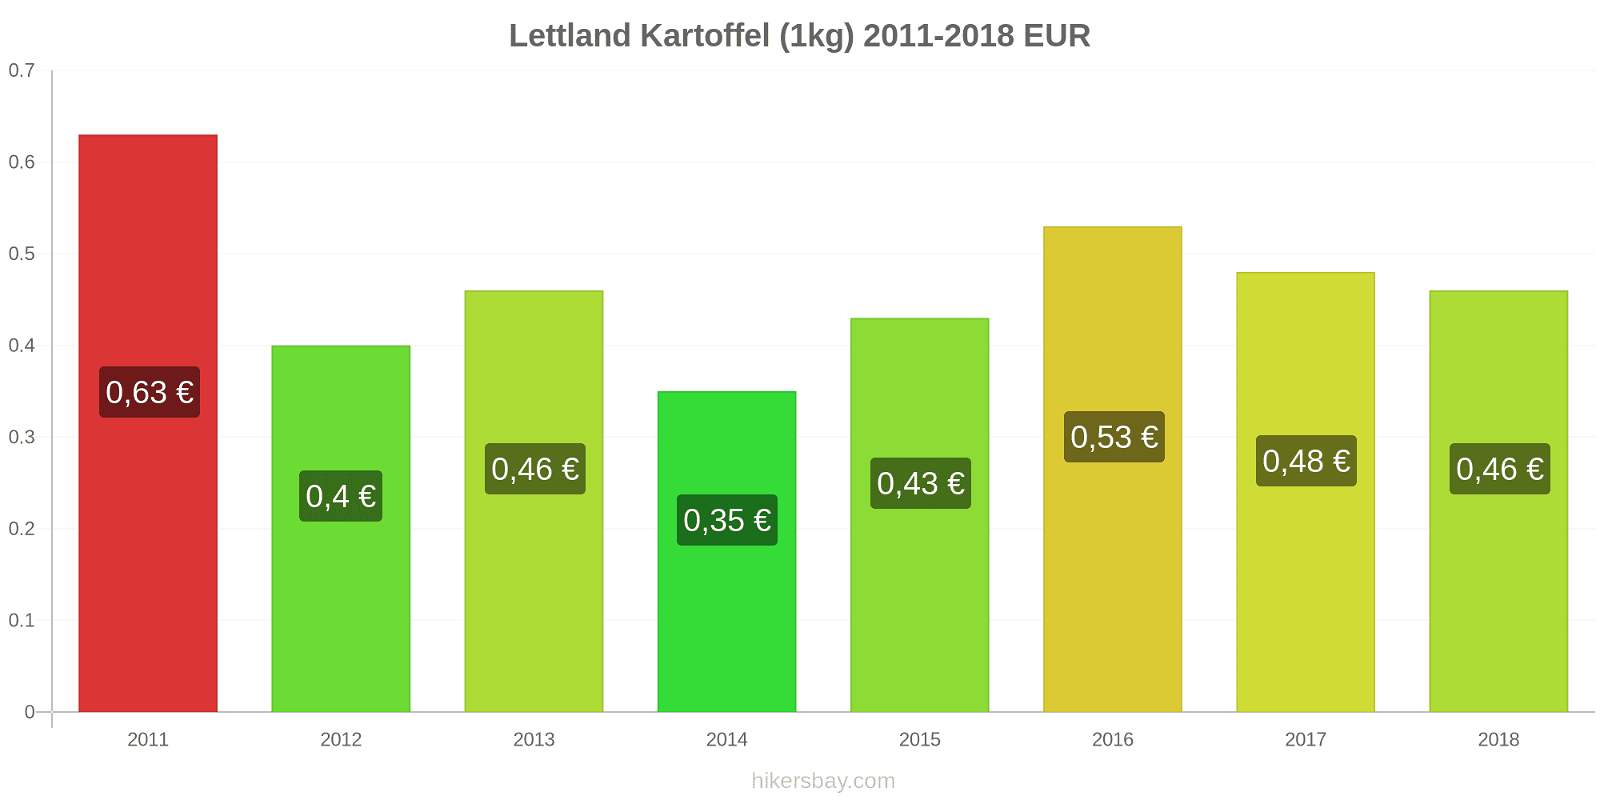 Lettland Preisänderungen Kartoffeln (1kg) hikersbay.com